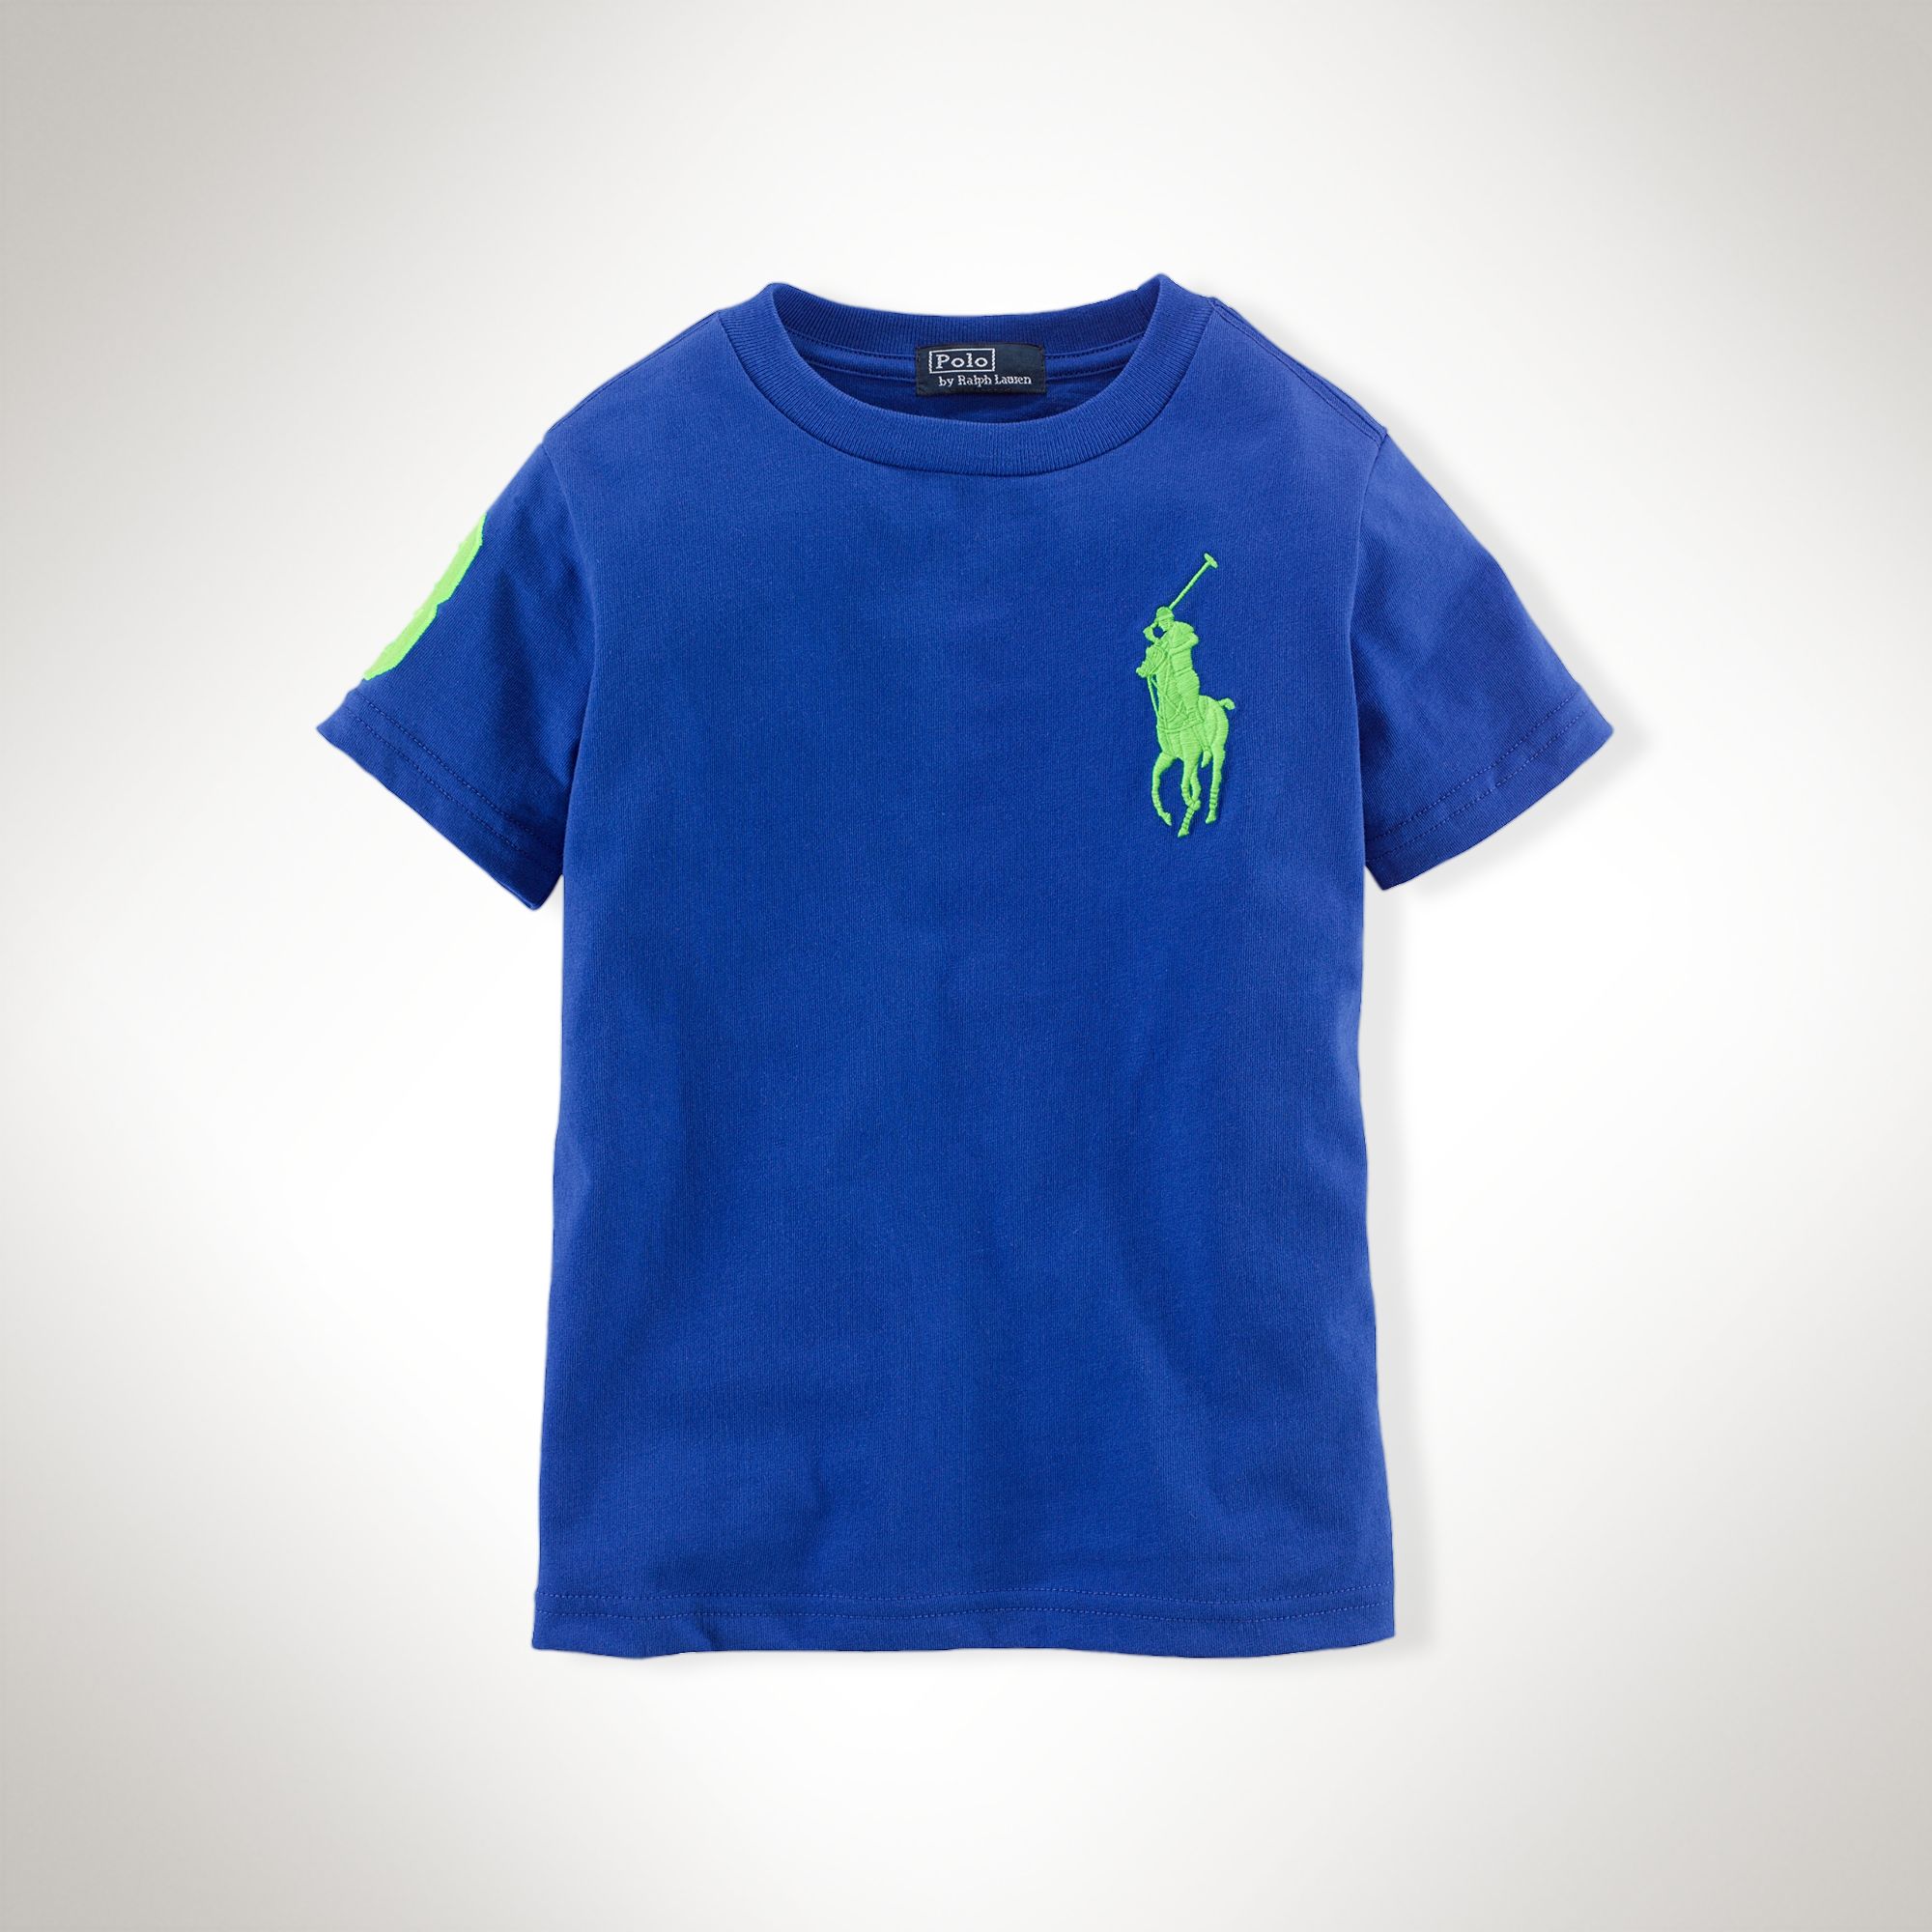 美國百分百【全新真品】Ralph Lauren T恤 男衣 RL 短袖 深藍 上衣 T-shirt Polo 大馬 XS S號 E102